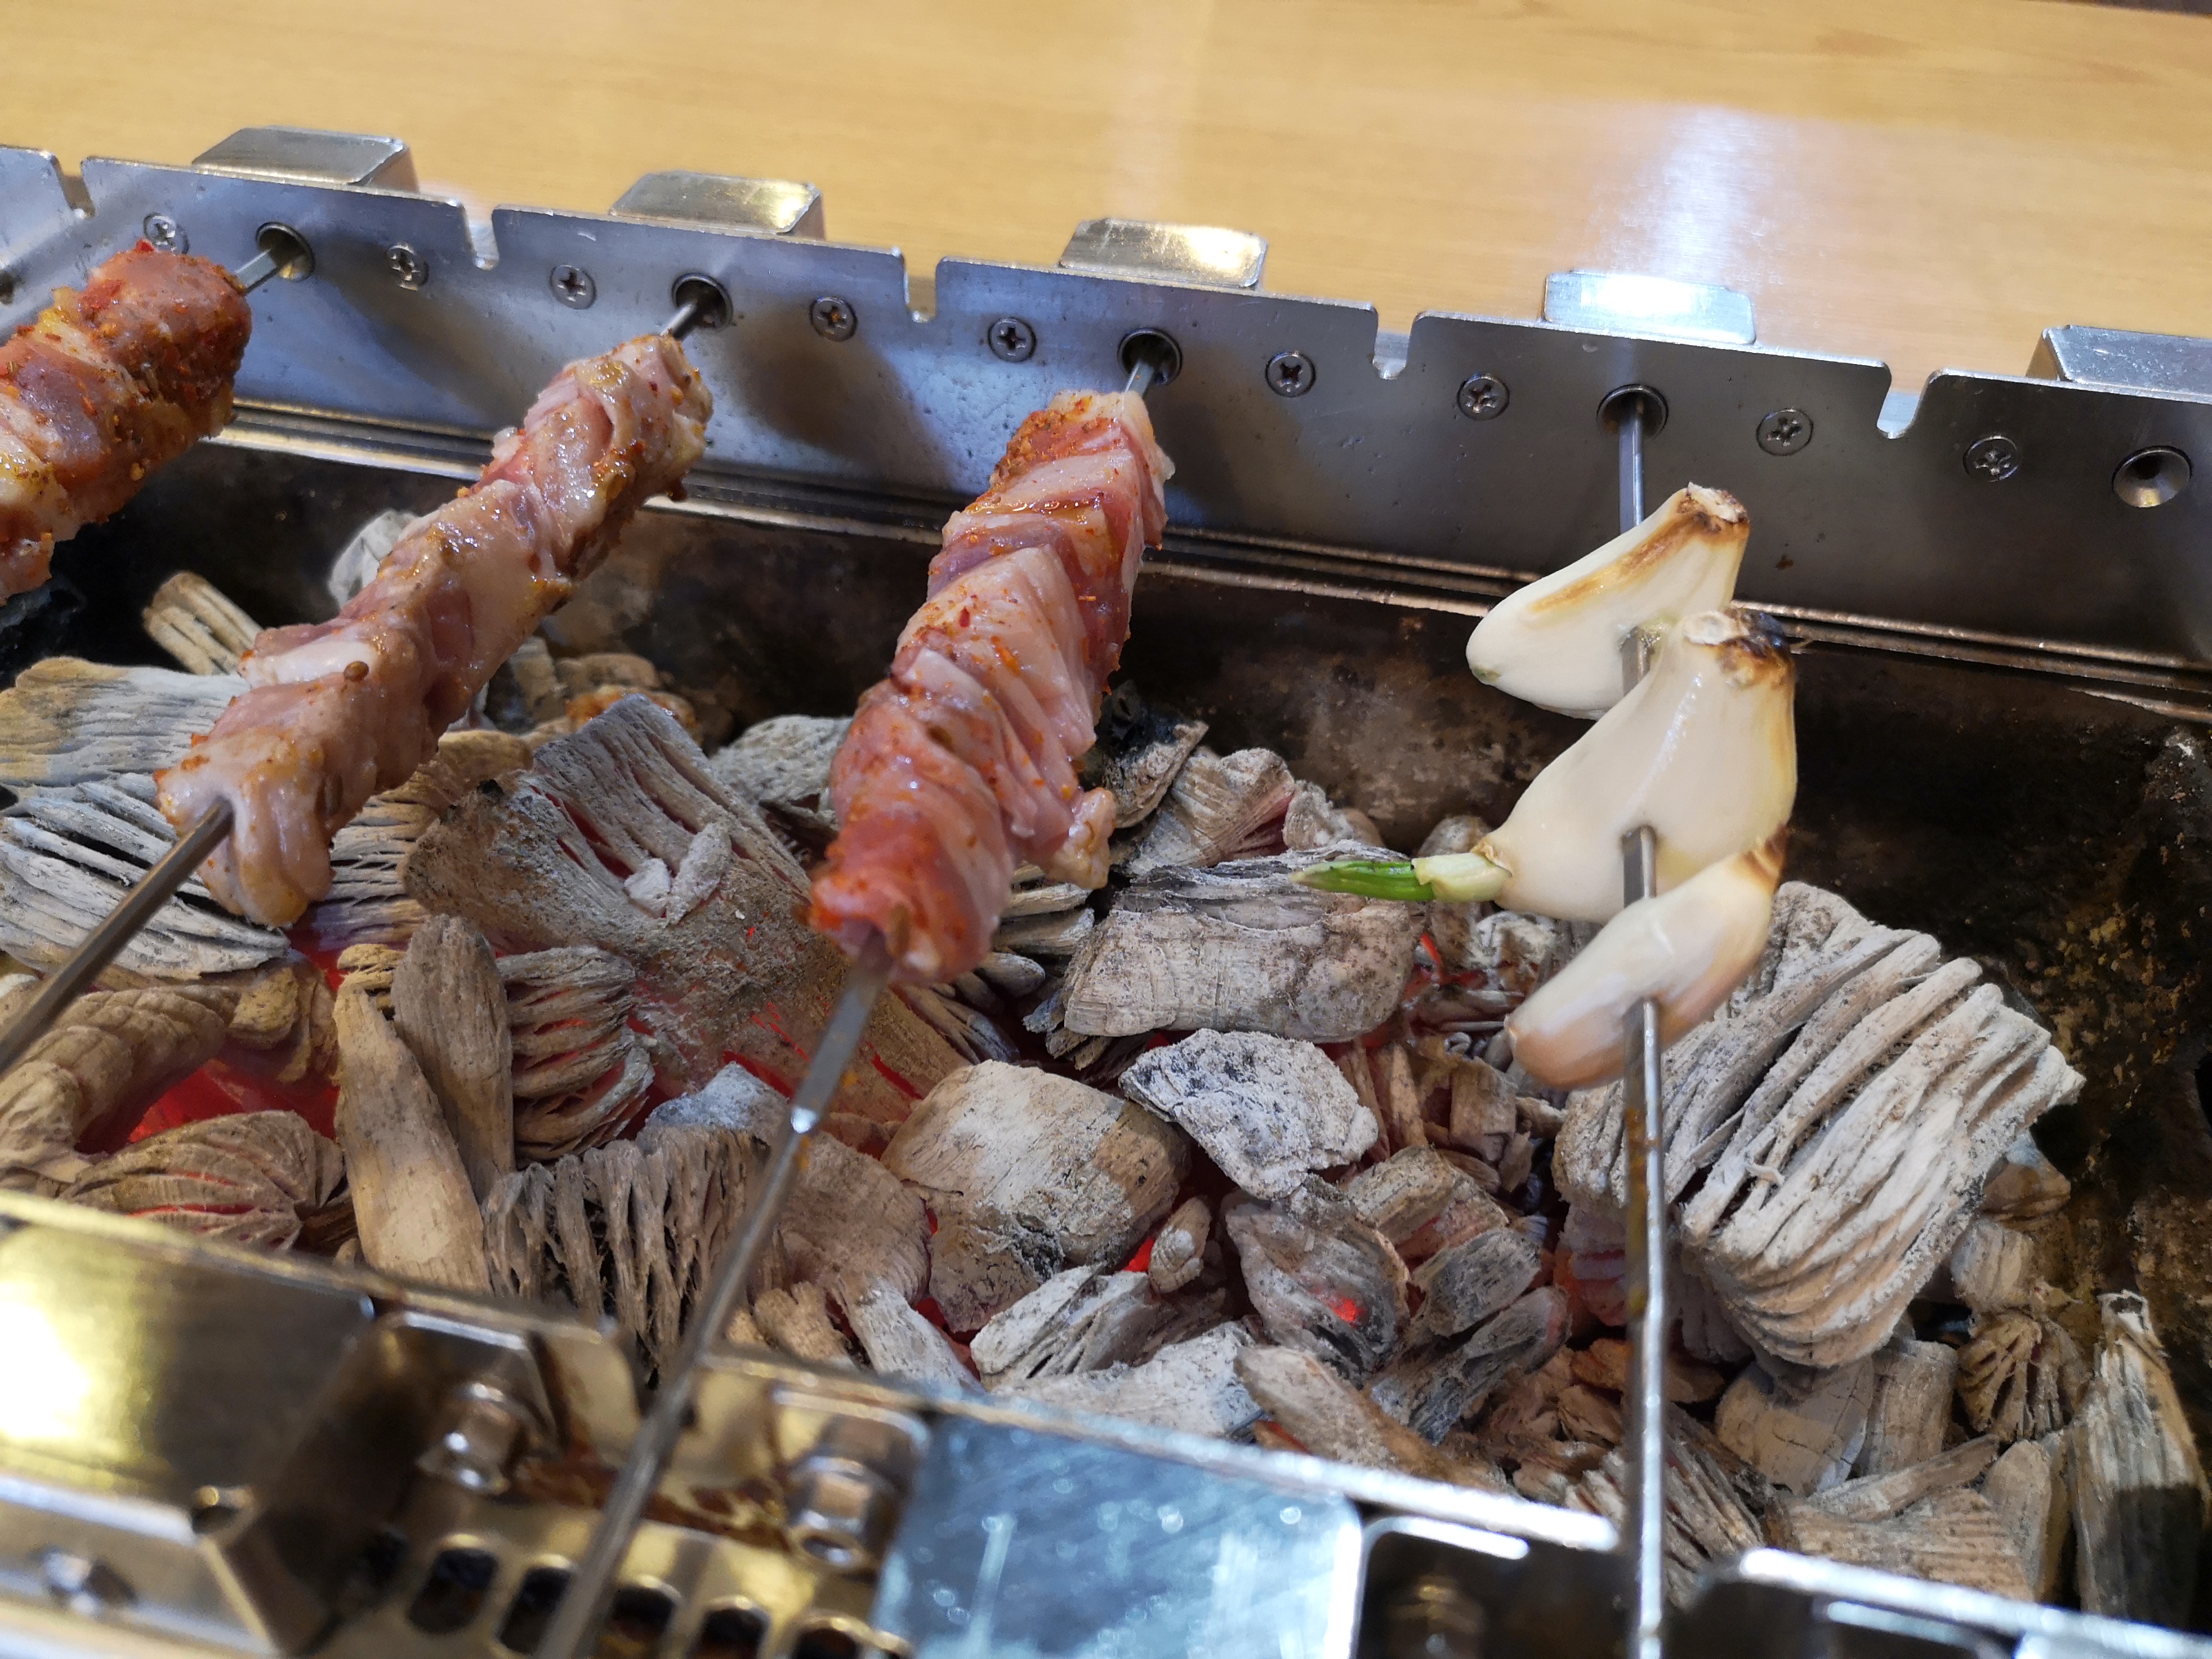 【首爾建大美食】京城羊肉串,媒體報導名店,烤盤自己轉好吃又好玩 @小環妞 幸福足跡